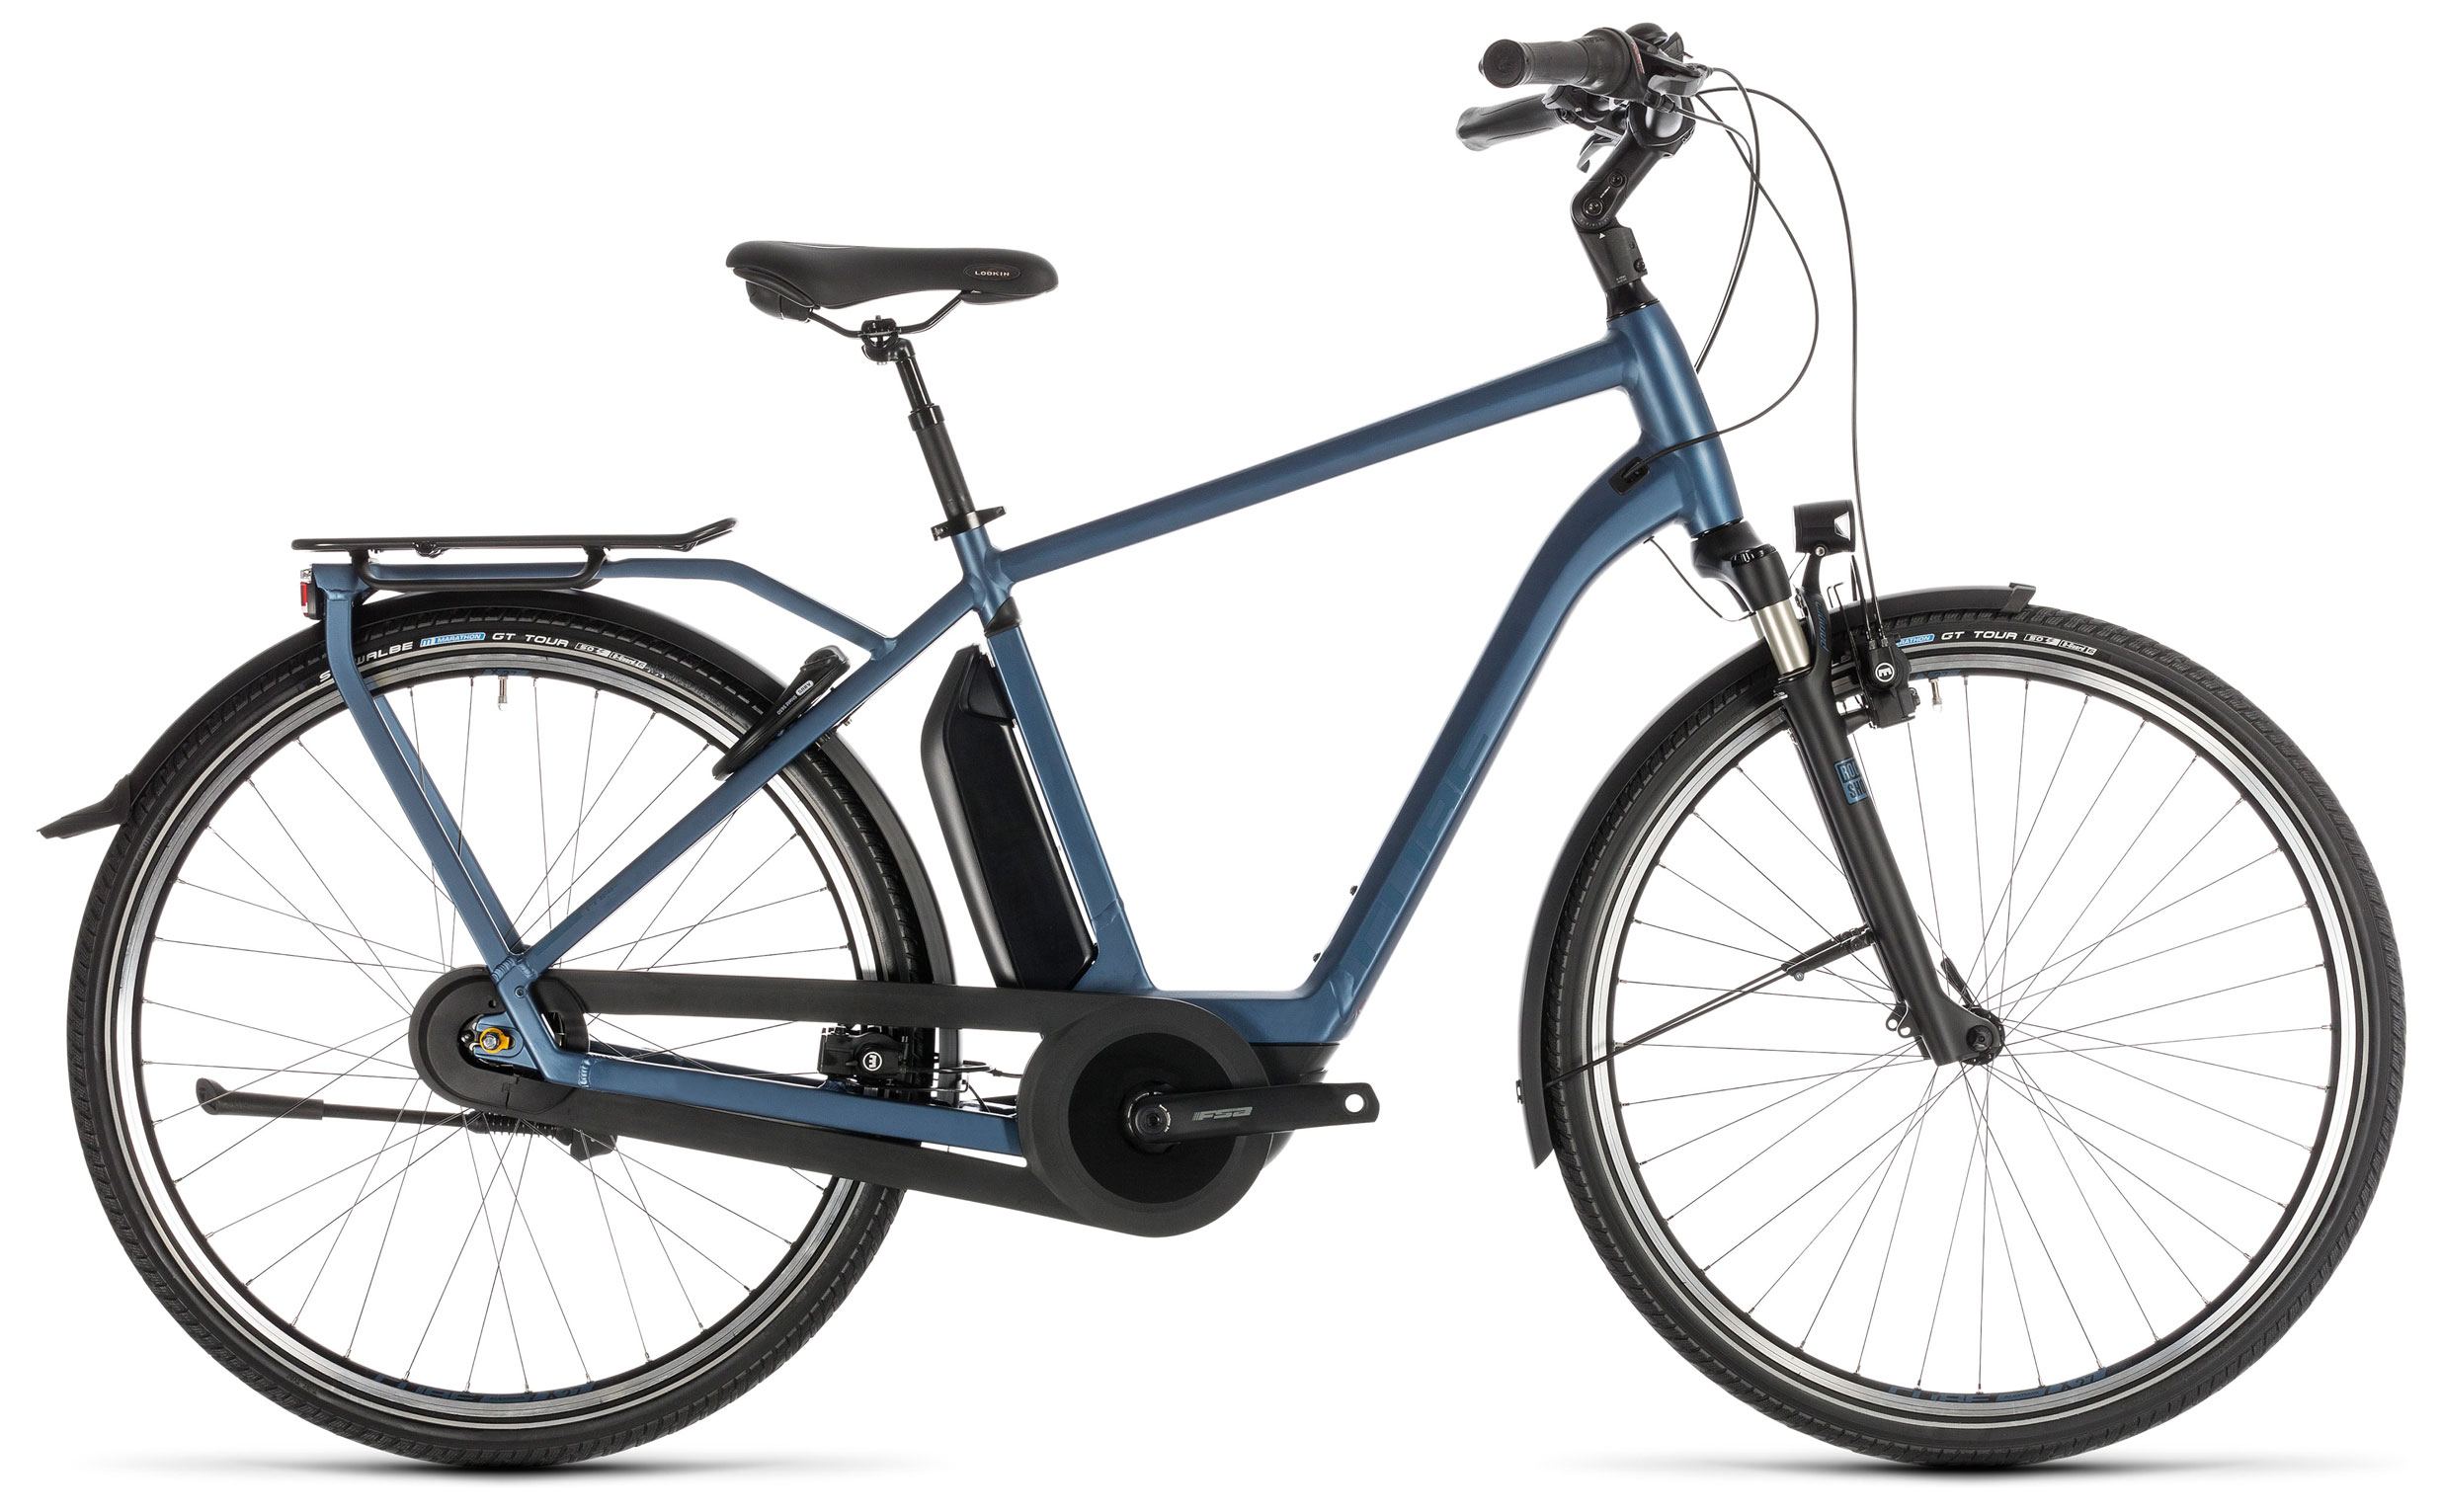  Велосипед Cube Town Hybrid EXC 400 2019